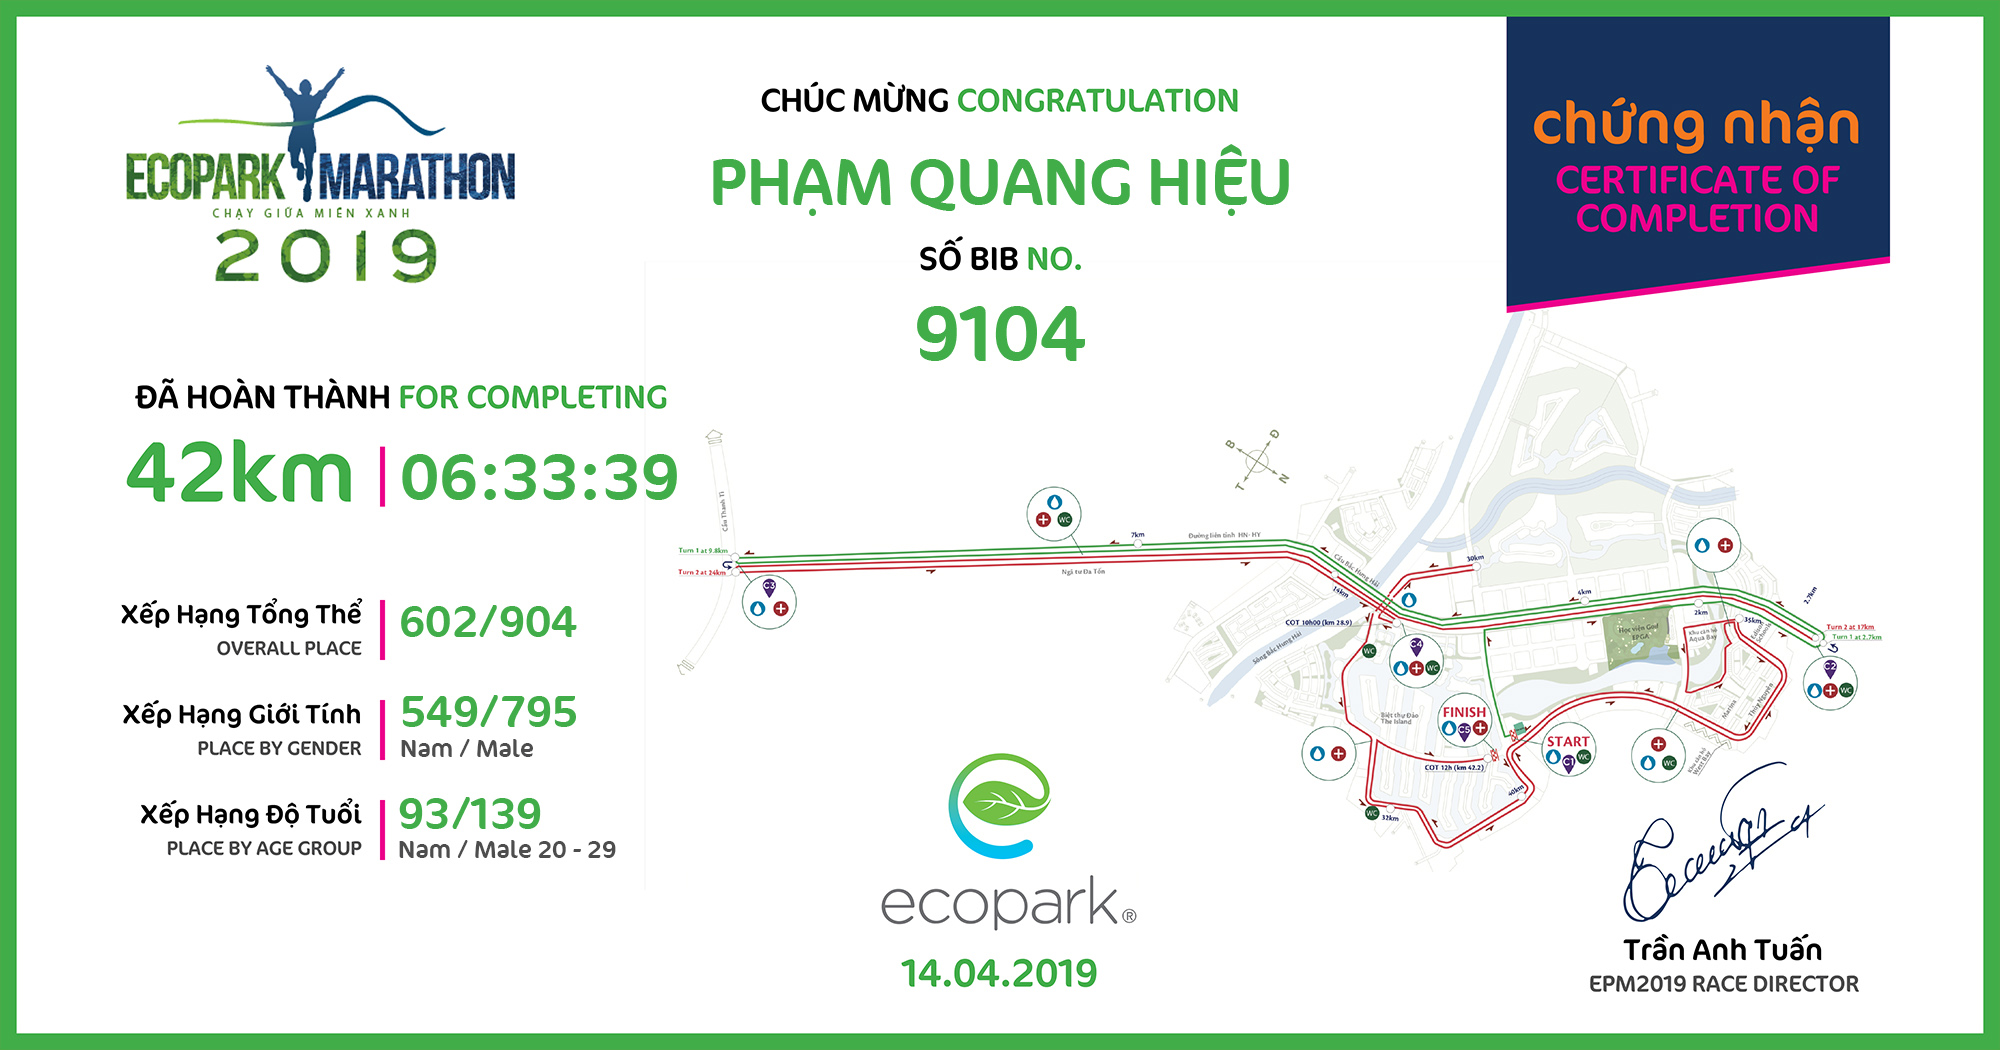 9104 - Phạm Quang Hiệu